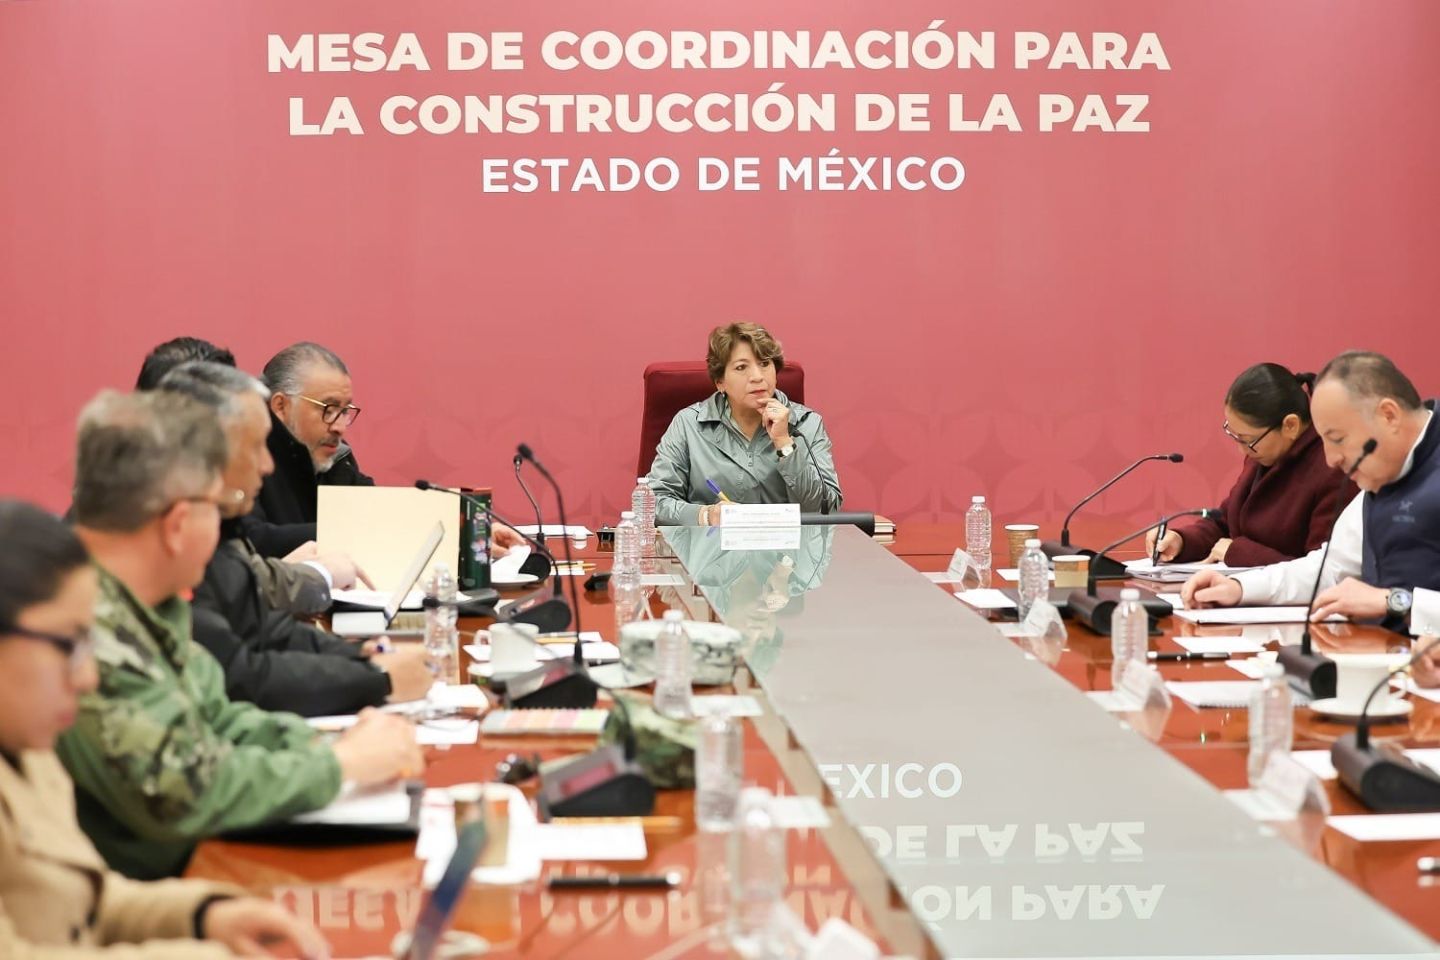 Gobierno de Delfina Gómez Reduce el Robo de Combustible
en el Estado de México; Bajan Cifras de Huachicoleo
